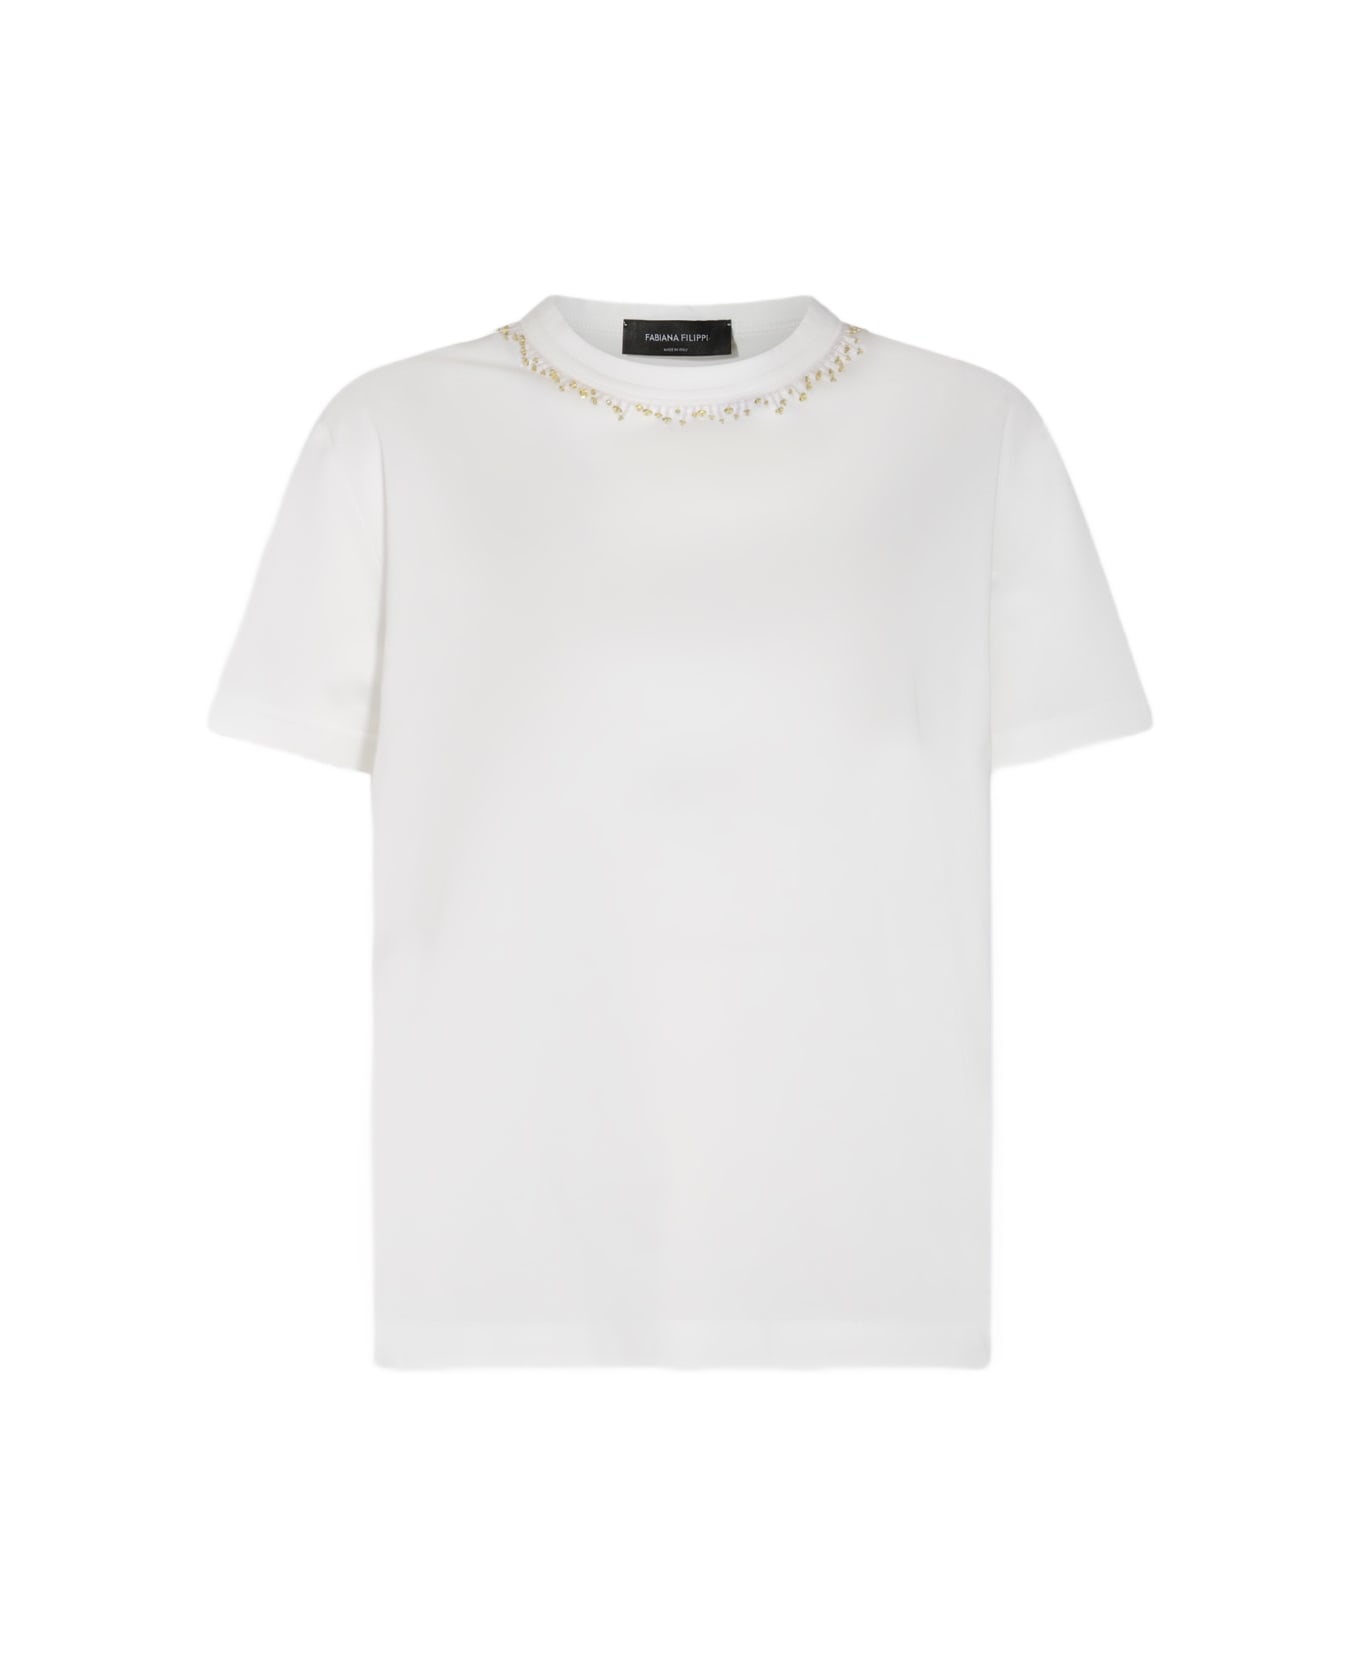 Fabiana Filippi White Cotton T-shirt - White